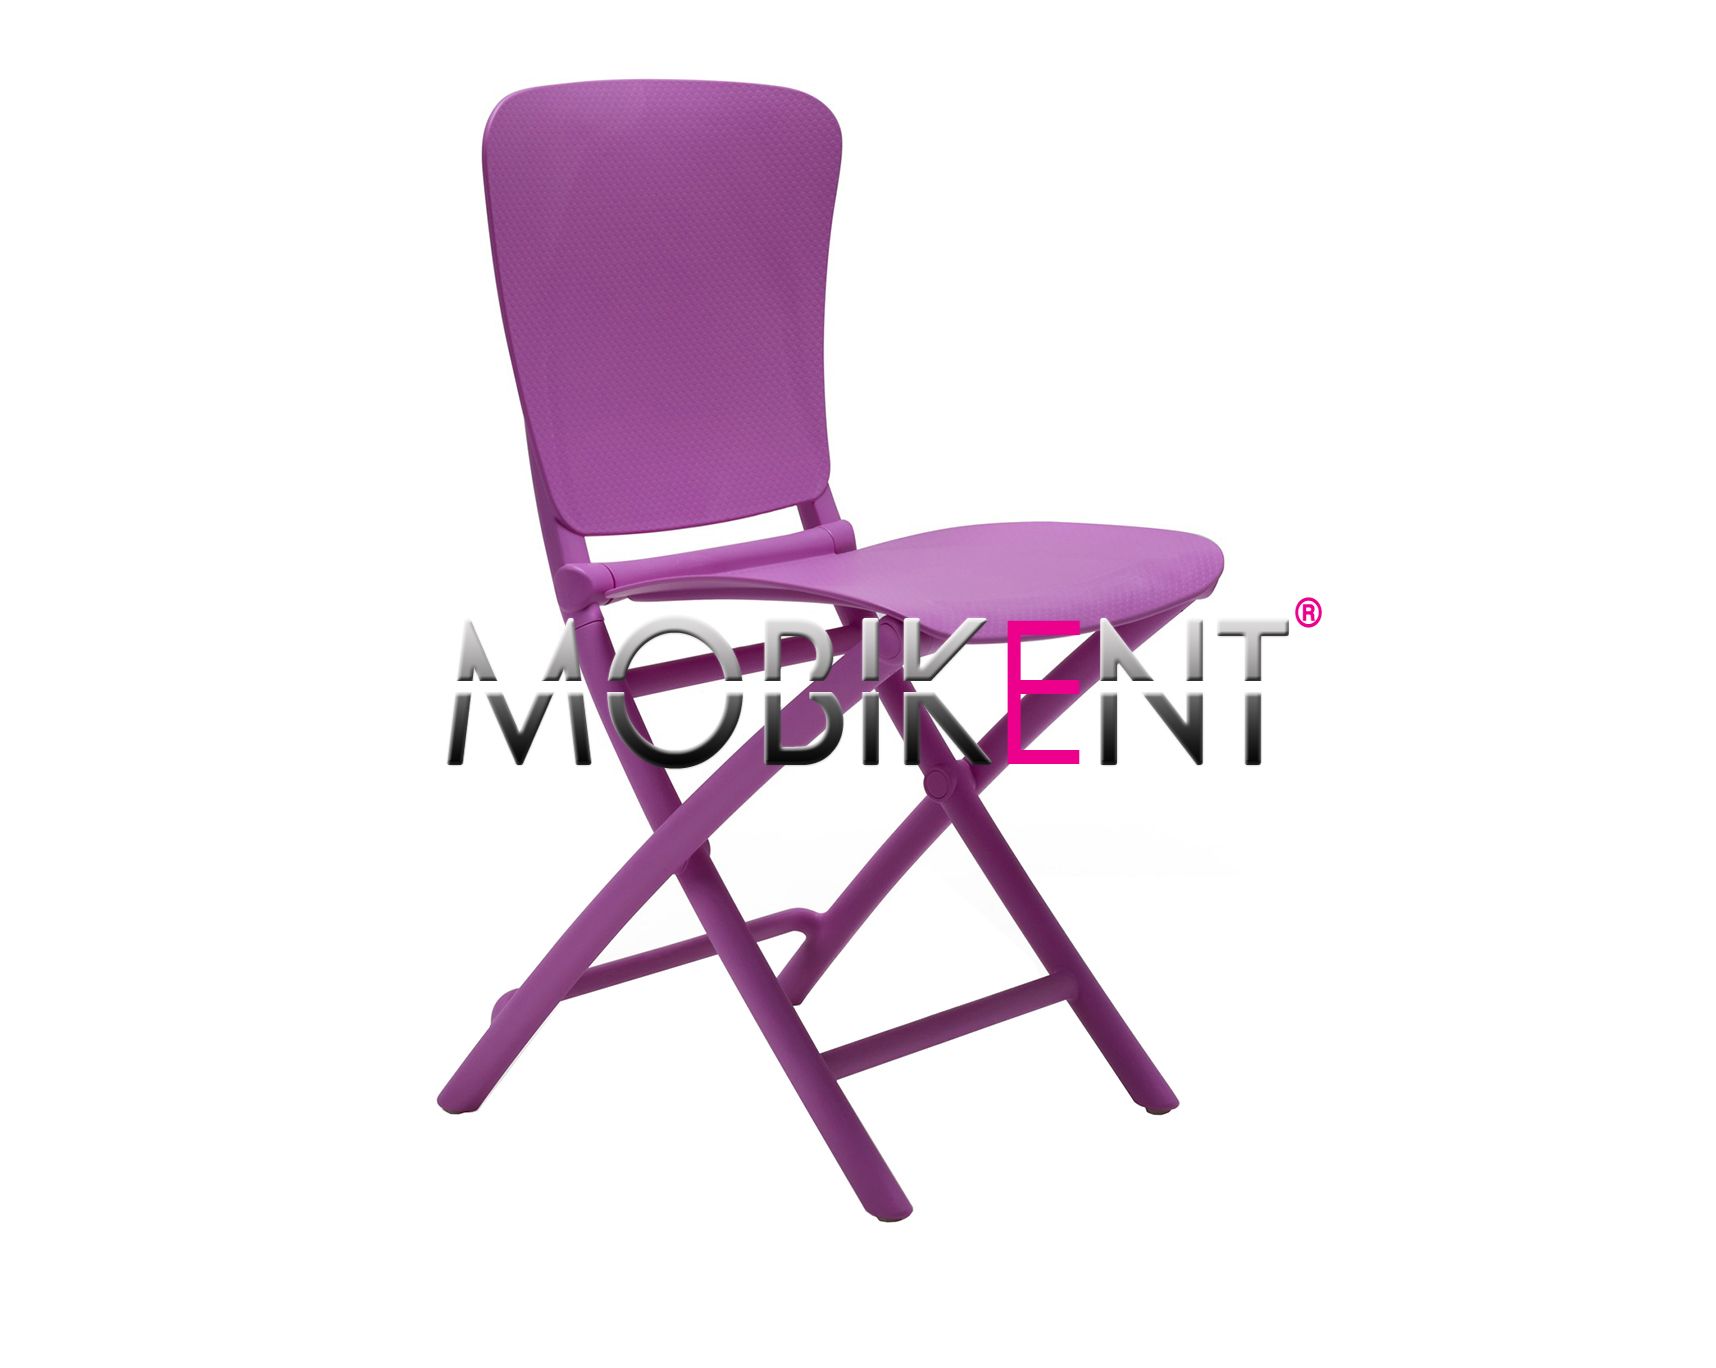 Cn06 - chaise pliante - mobikent - pour bar et restaurant_0